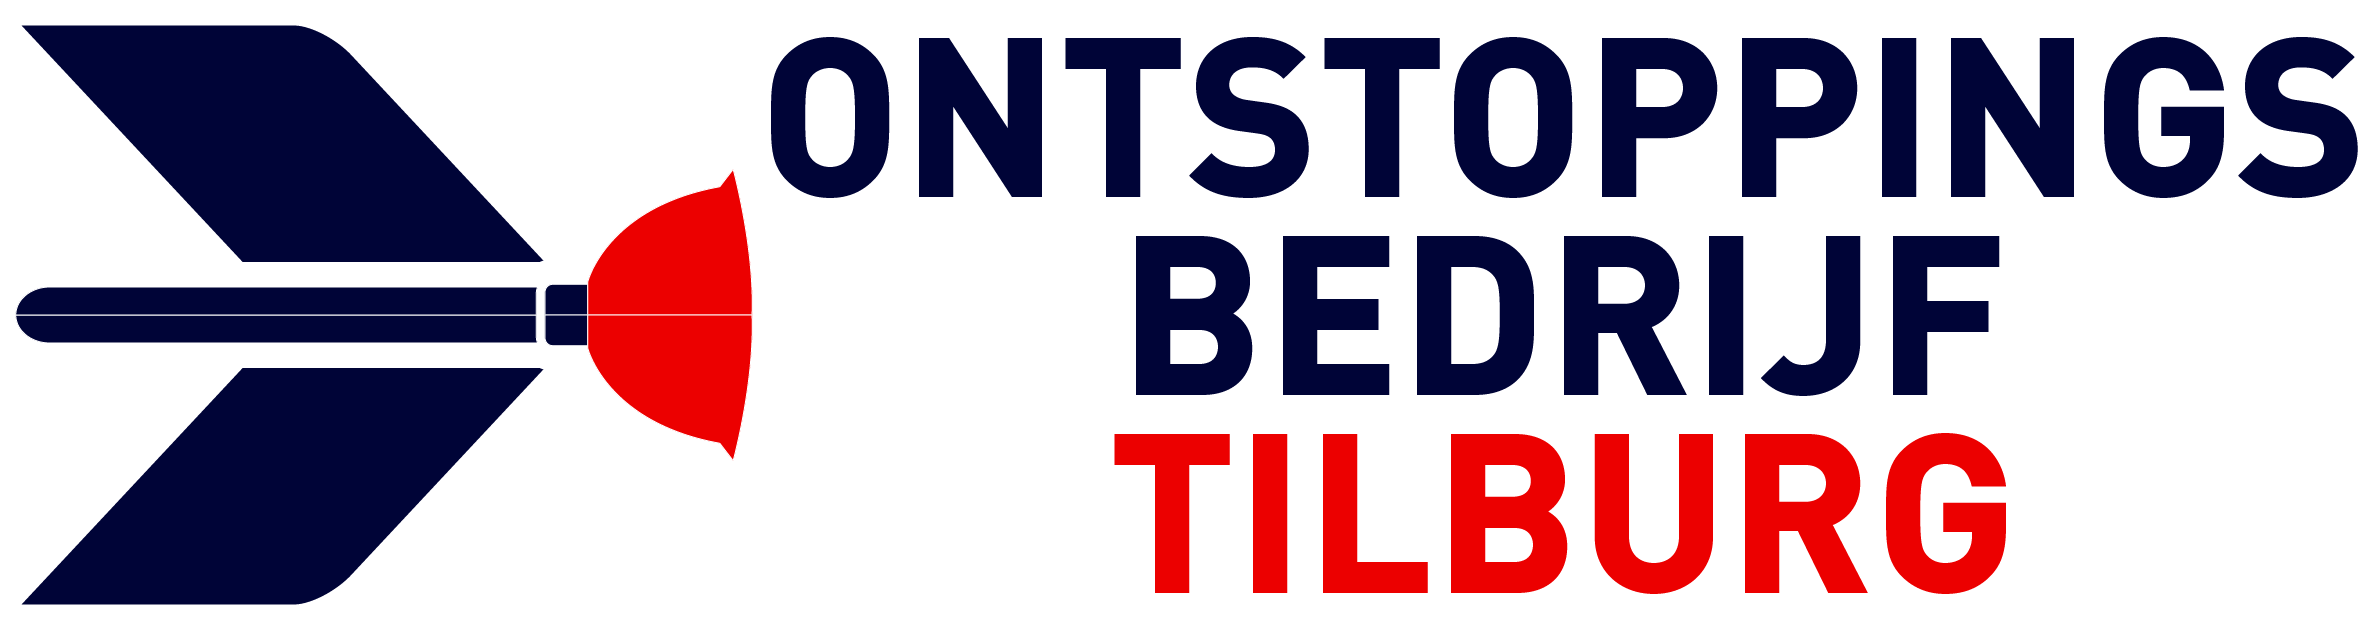 Ontstoppingsbedrijf Tilburg logo